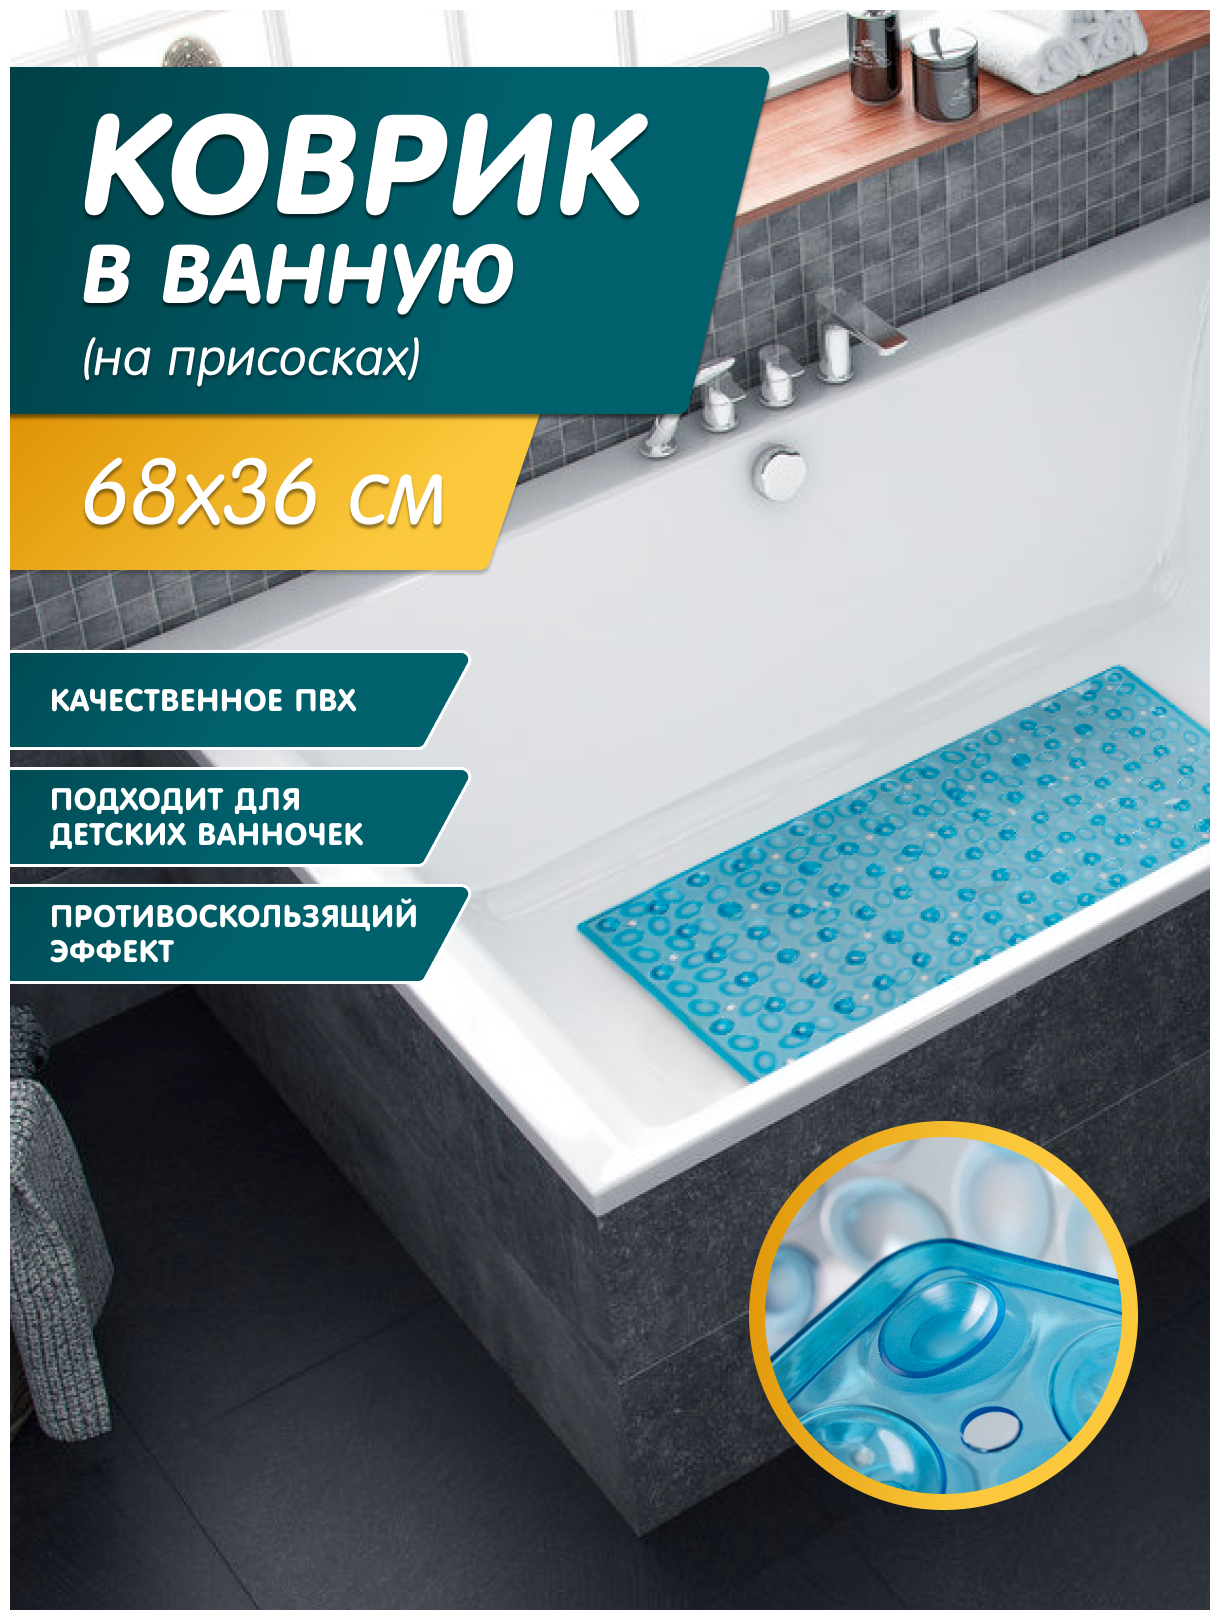 Коврик для ванной и для душевой кабины пвх на присосках размер 68х36 см прямоугольный, голубой